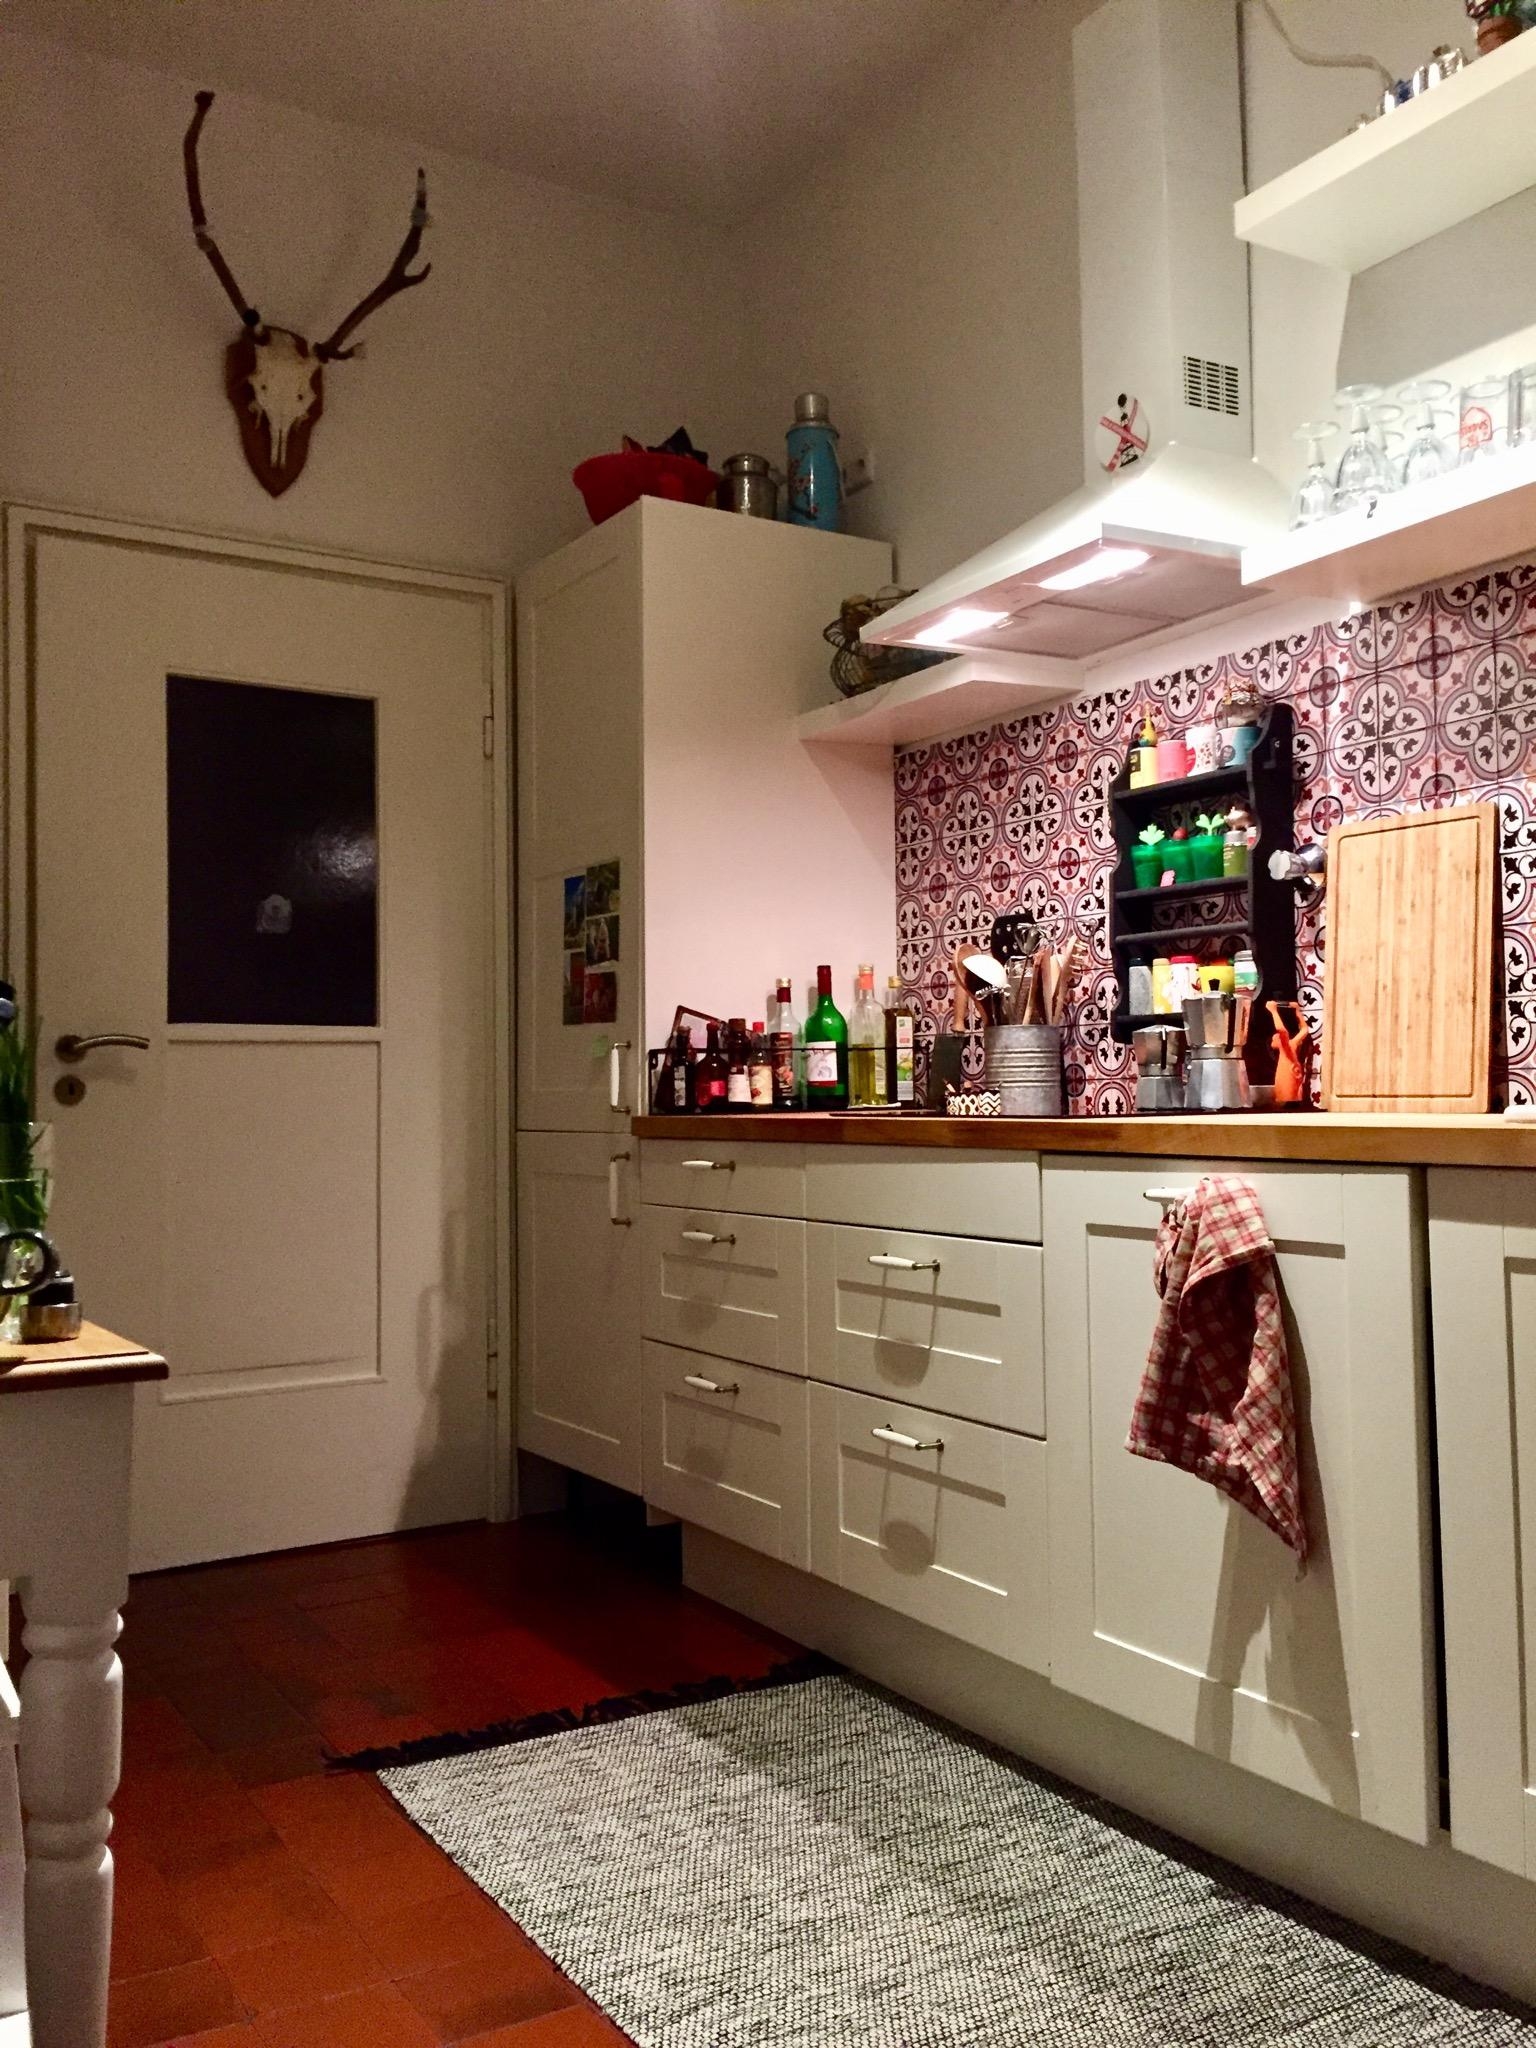 Hier fehlt nur noch die farblich passende kitchenAid... 😍 #küchenliebe #livingchallenge 